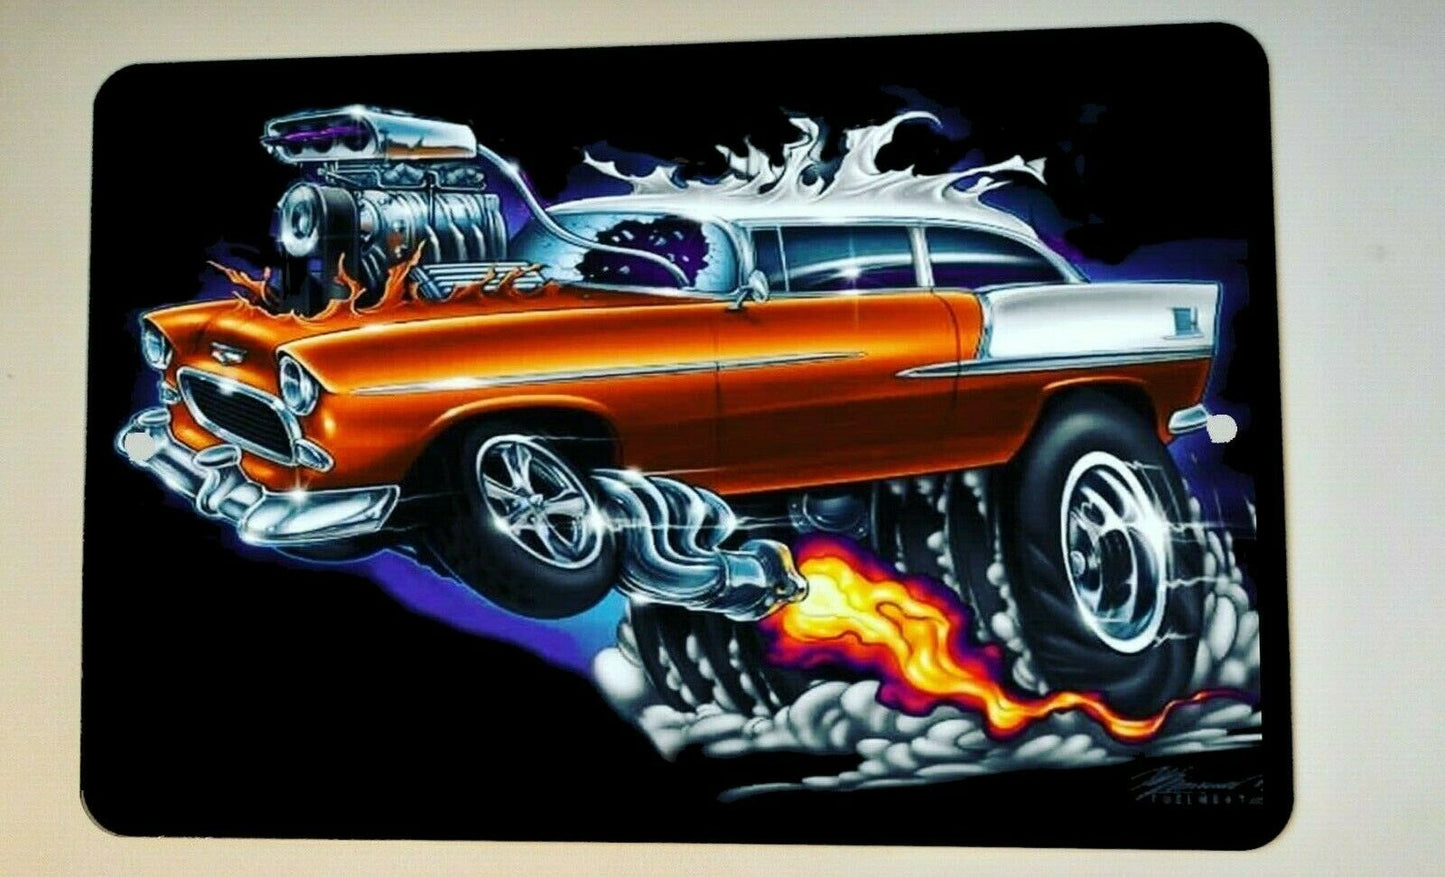 Hot Rod Wheelie Gasser Street Car Artwork 8x12 Metal Wall  Car Sign Garage Poster